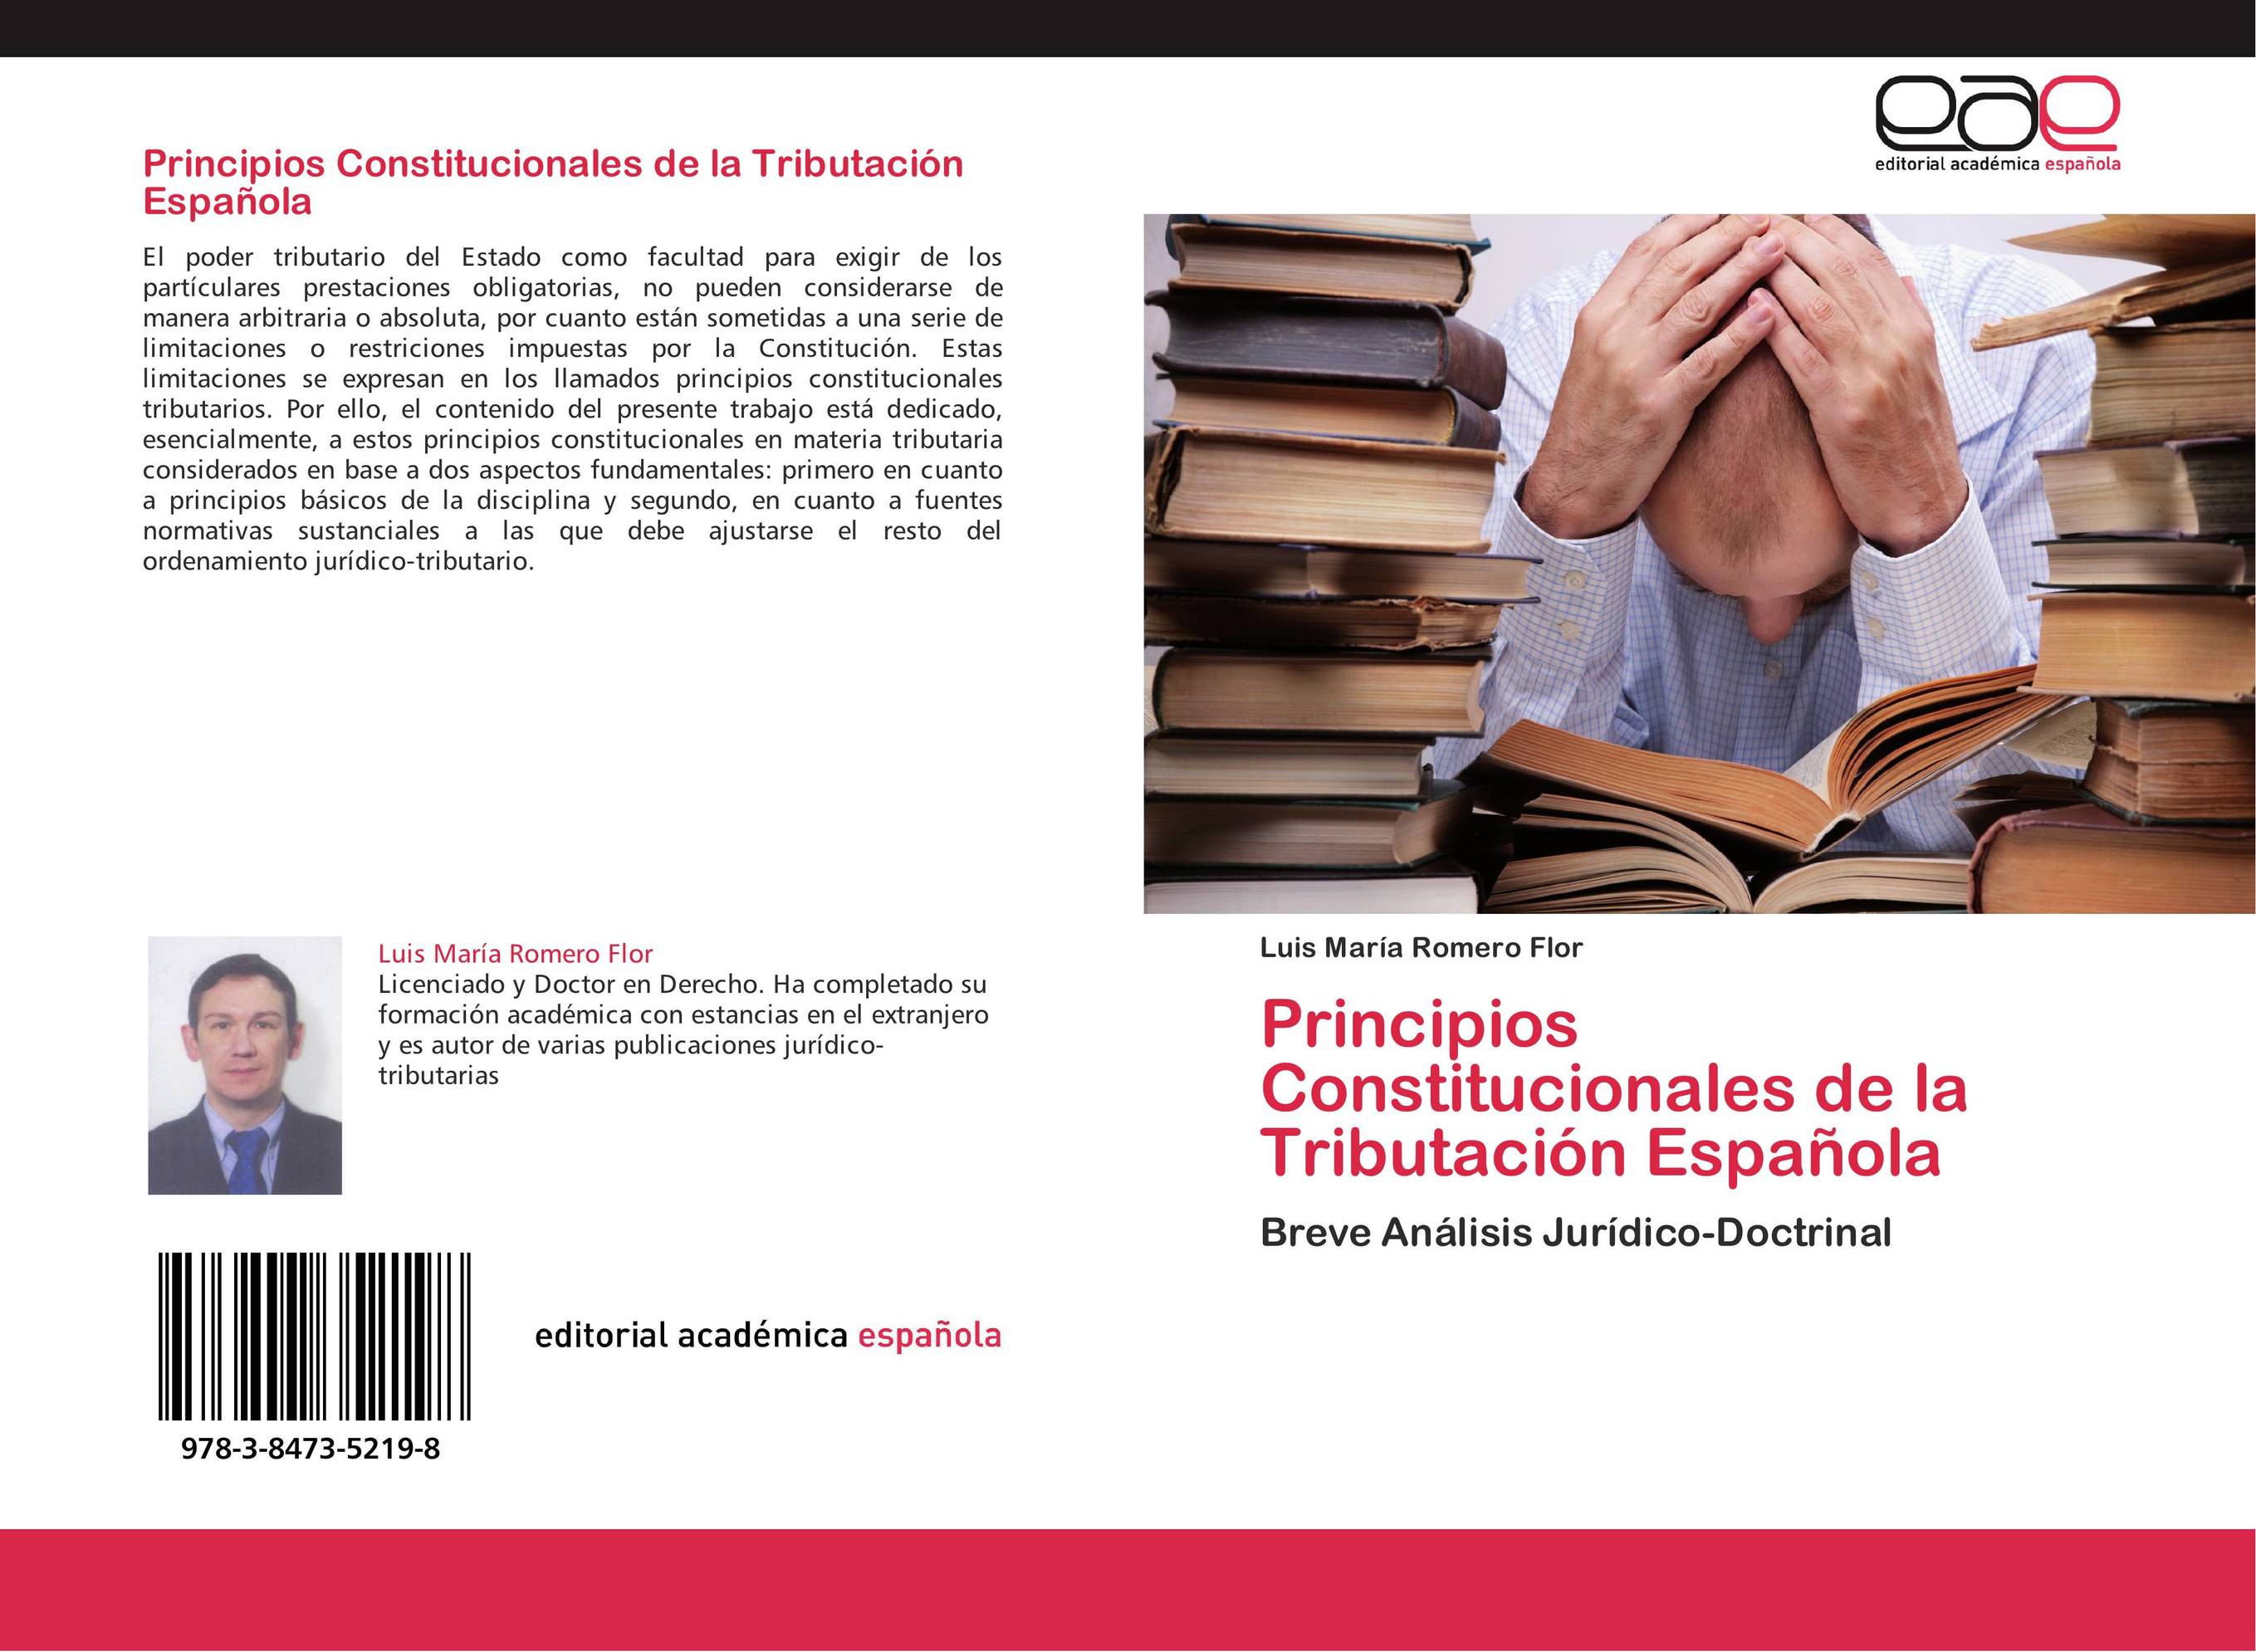 Principios Constitucionales de la Tributación Española